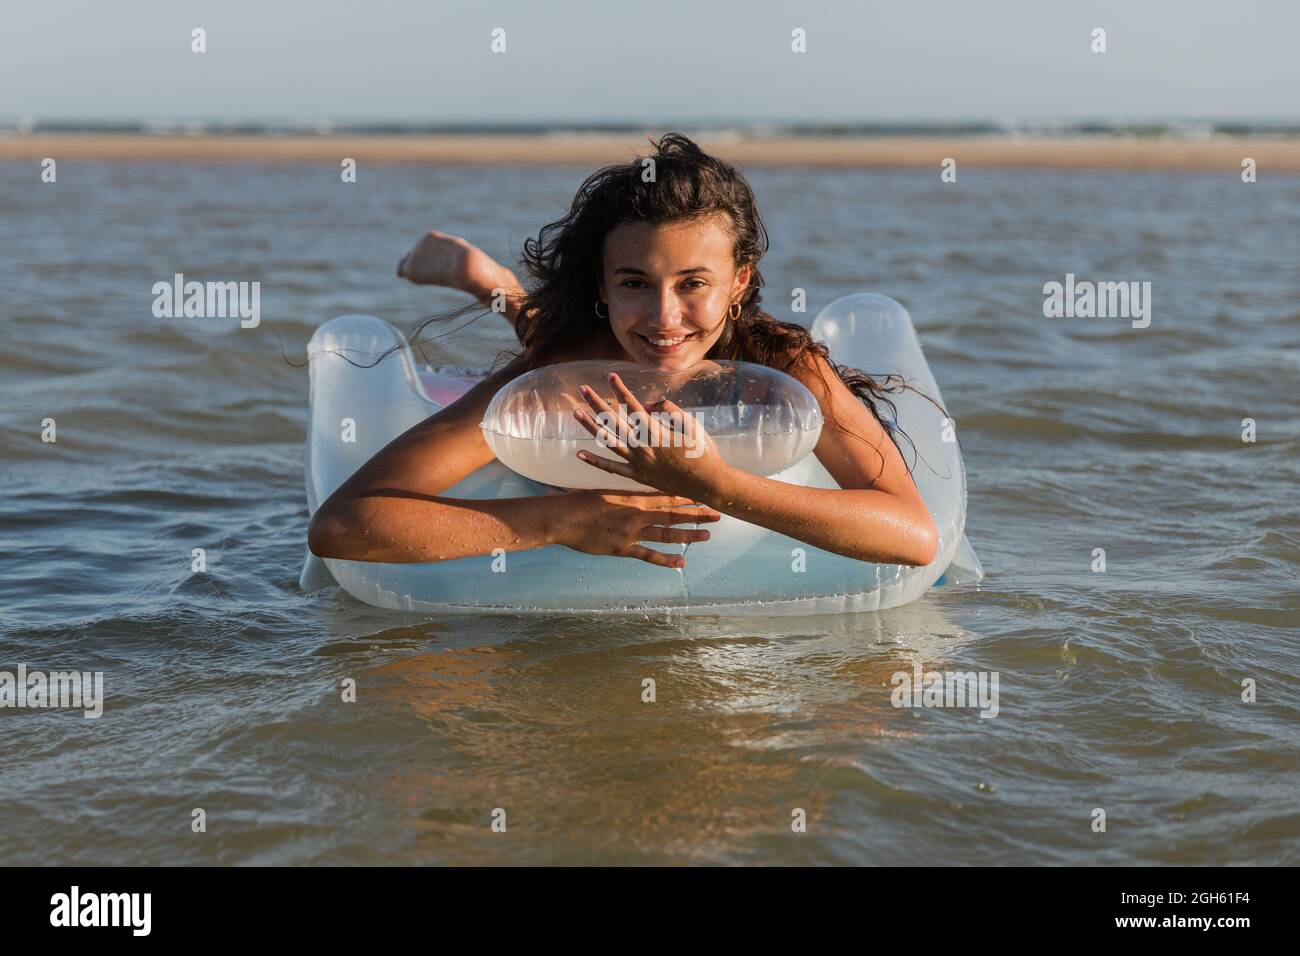 Inhalt Frau, die auf einer aufblasbaren Matratze liegt, schwimmt im Sommer an sonnigen Tagen auf dem Meerwasser und schaut in die Kamera Stockfoto